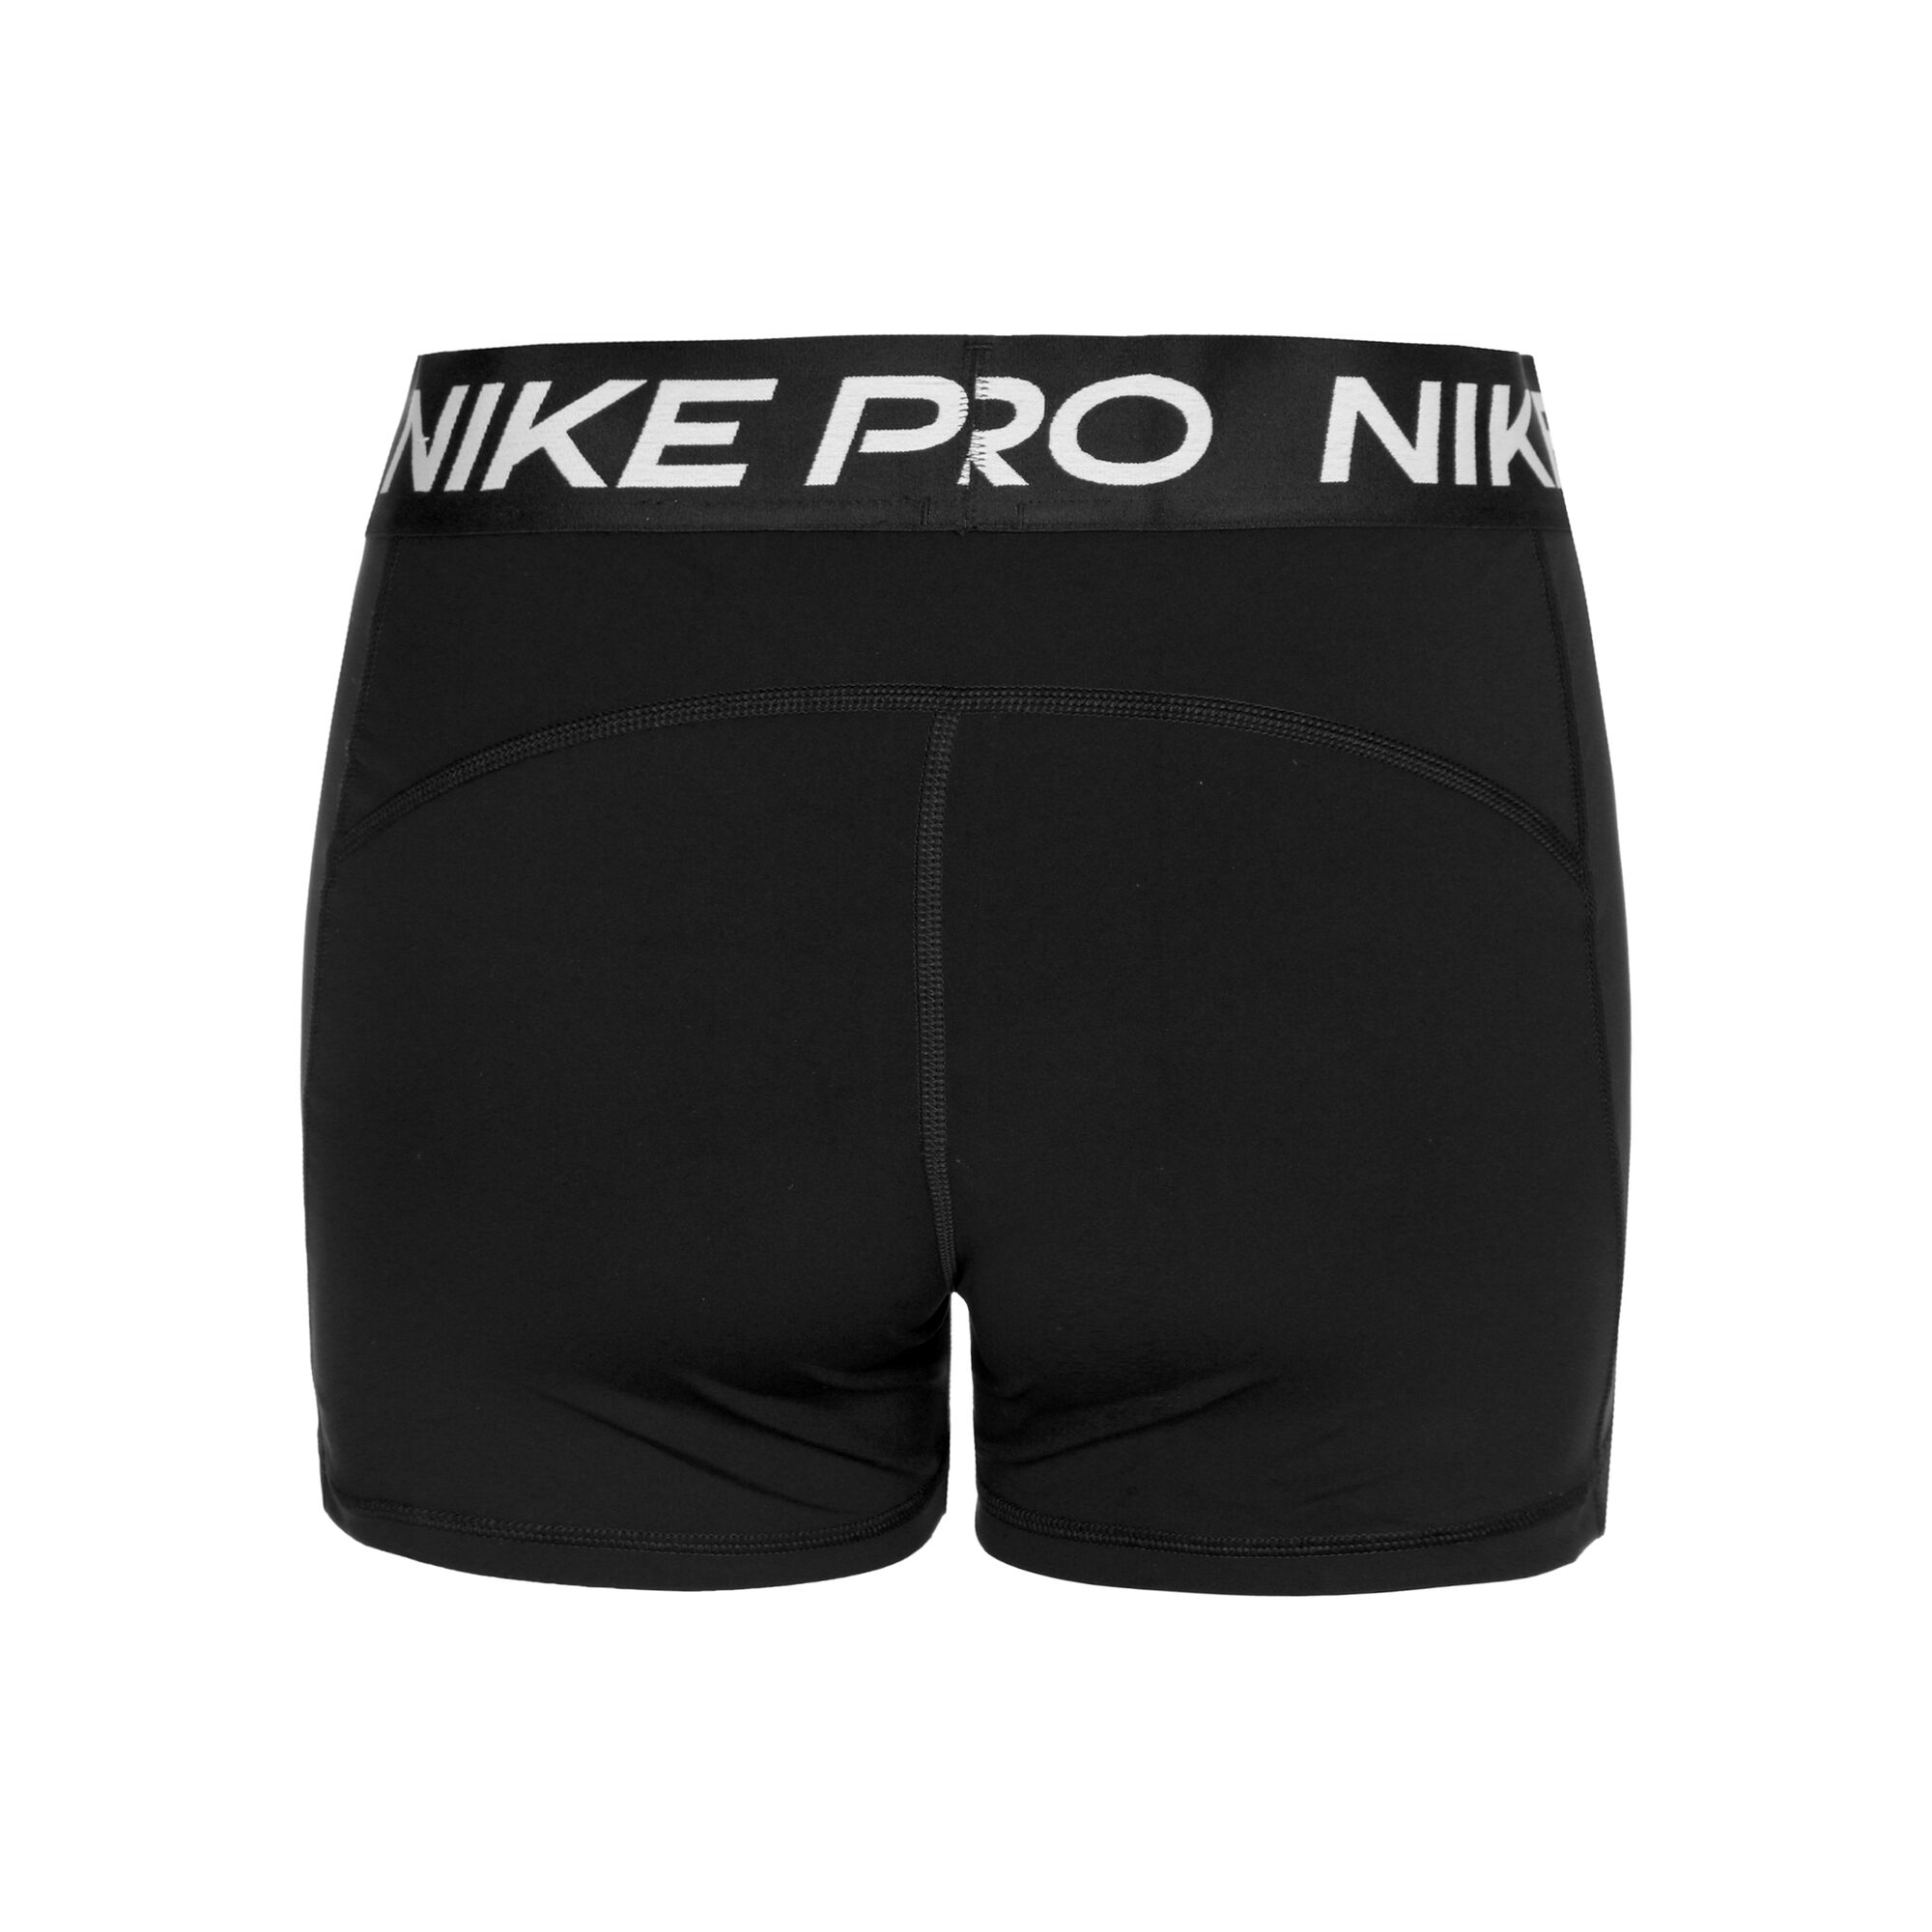 Womens Nike Shorts, Nike Pro Shorts